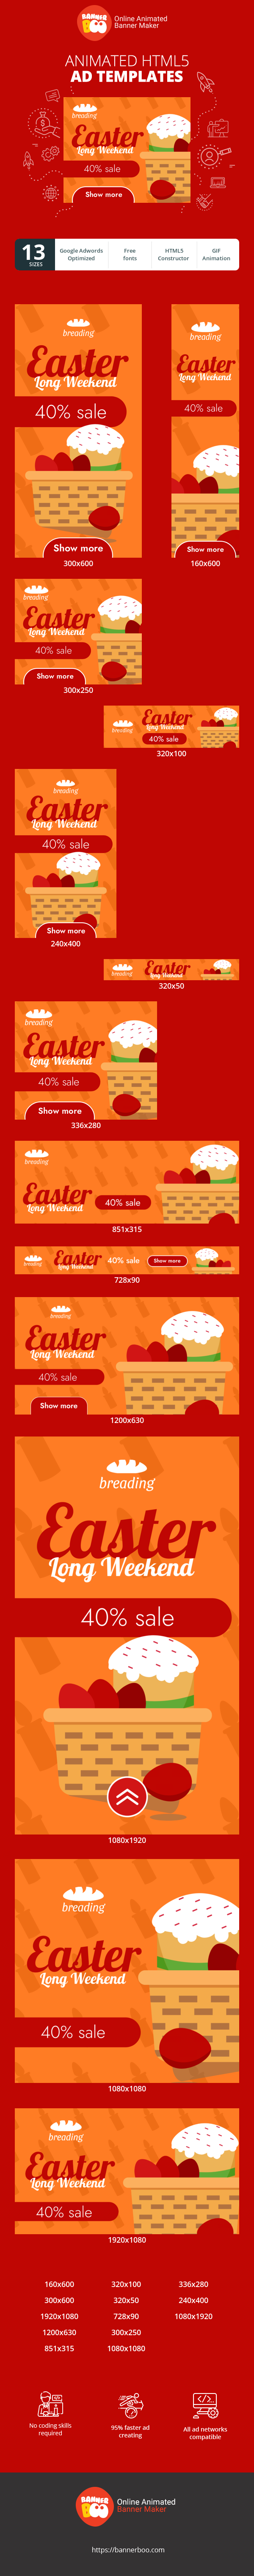 Easter Long Weekend — 40% Sale